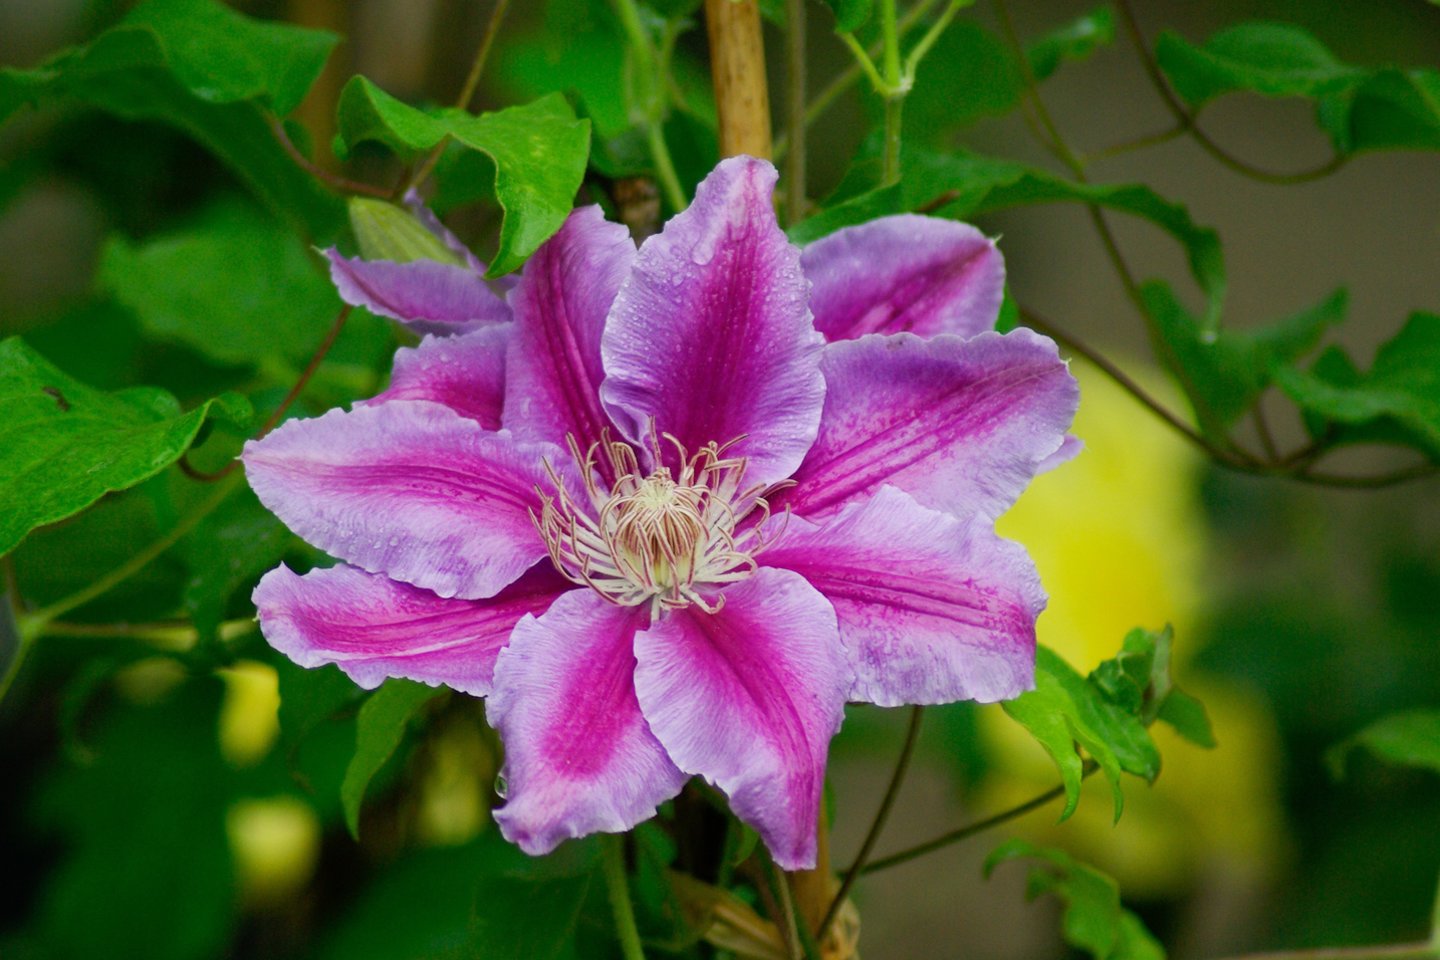 Raganės teisėtai gali vadintis sodo karalienėmis – labai nedaug vijoklinių augalų prilygtų joms žiedų įvairiaspalviškumu ir jų sandara.<br>Pixabay.com nuotr.